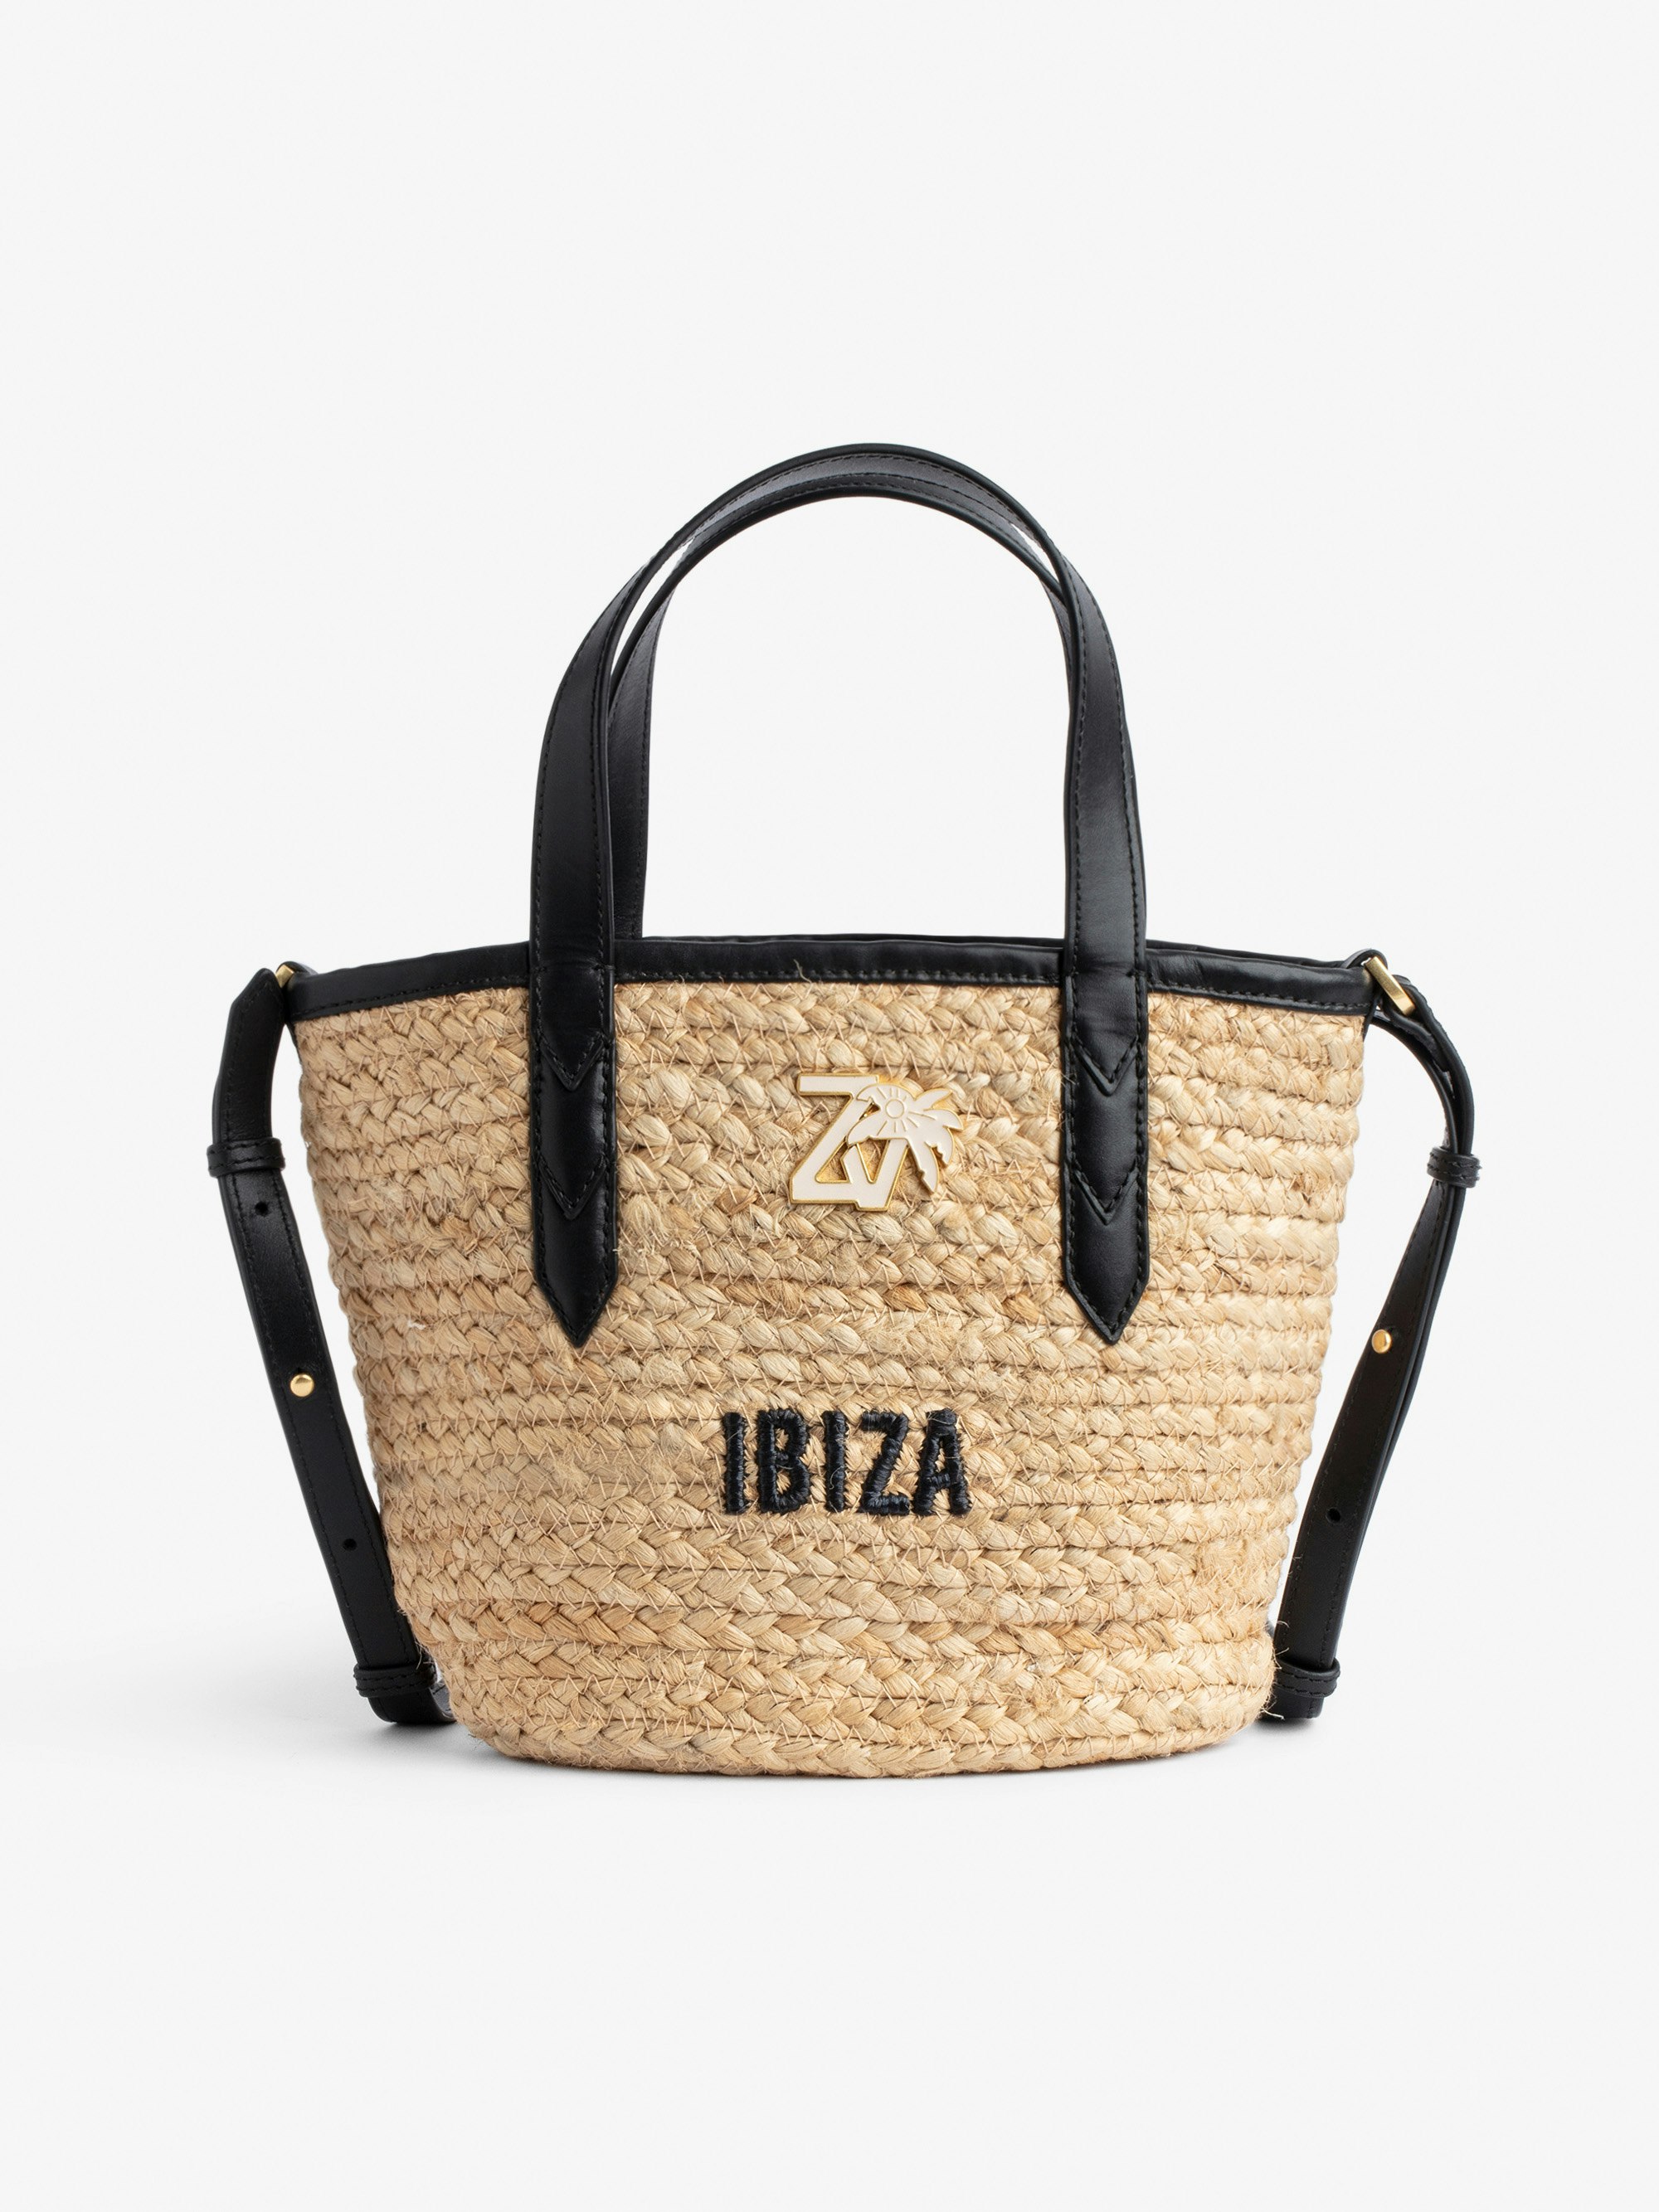 Borsa Le Baby Beach Bag - Borsa in paglia con tracolla in pelle nera, con ricamo "Ibiza" e impreziosita da un charm ZV - Donna